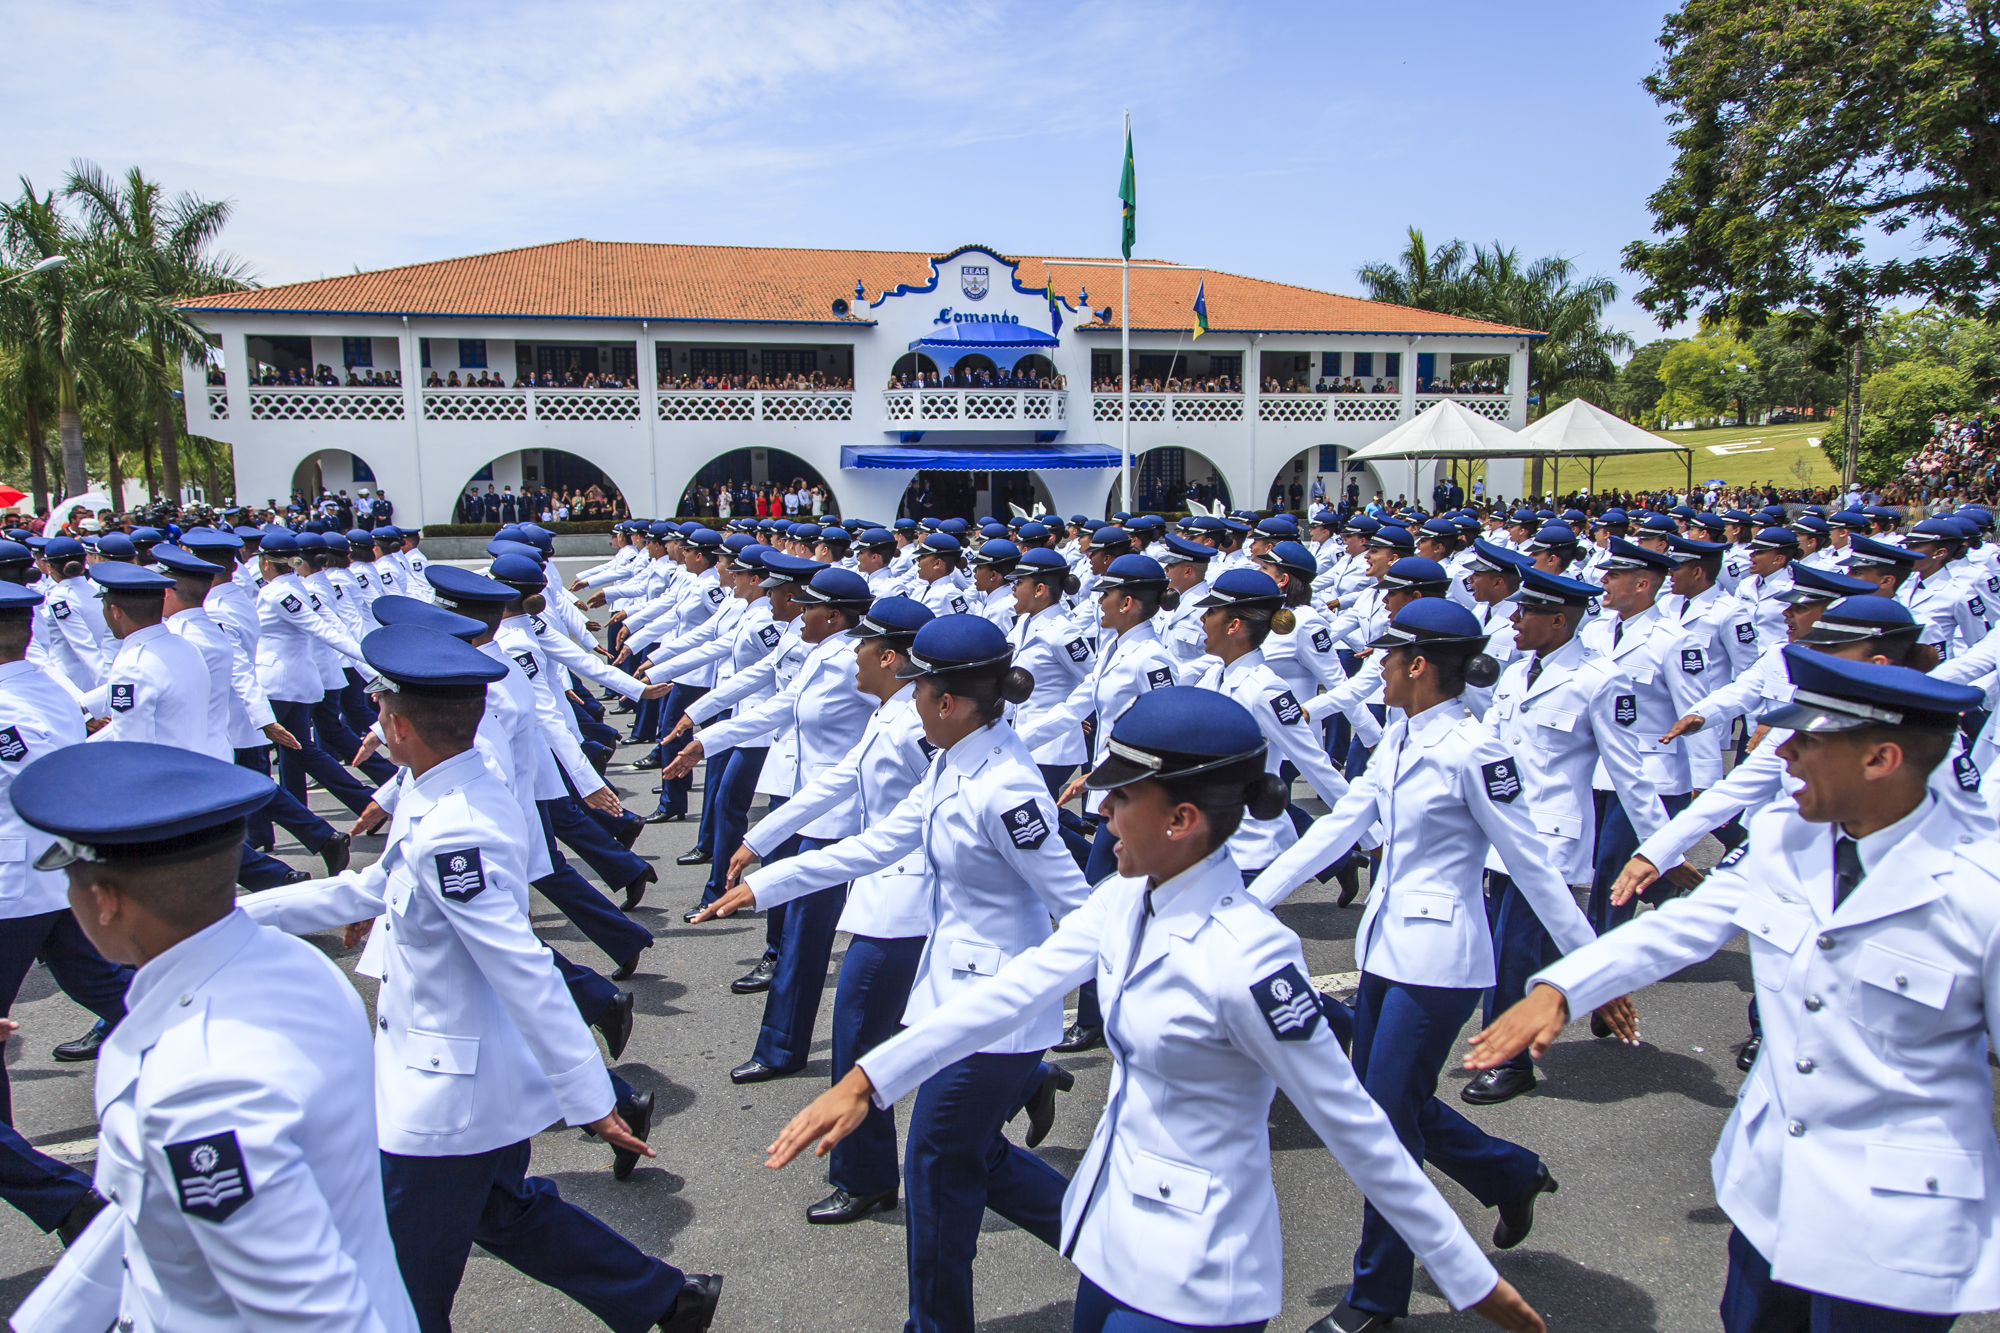 EEAR realiza formatura de 530 novos sargentos da FAB - Força Aérea  Brasileira